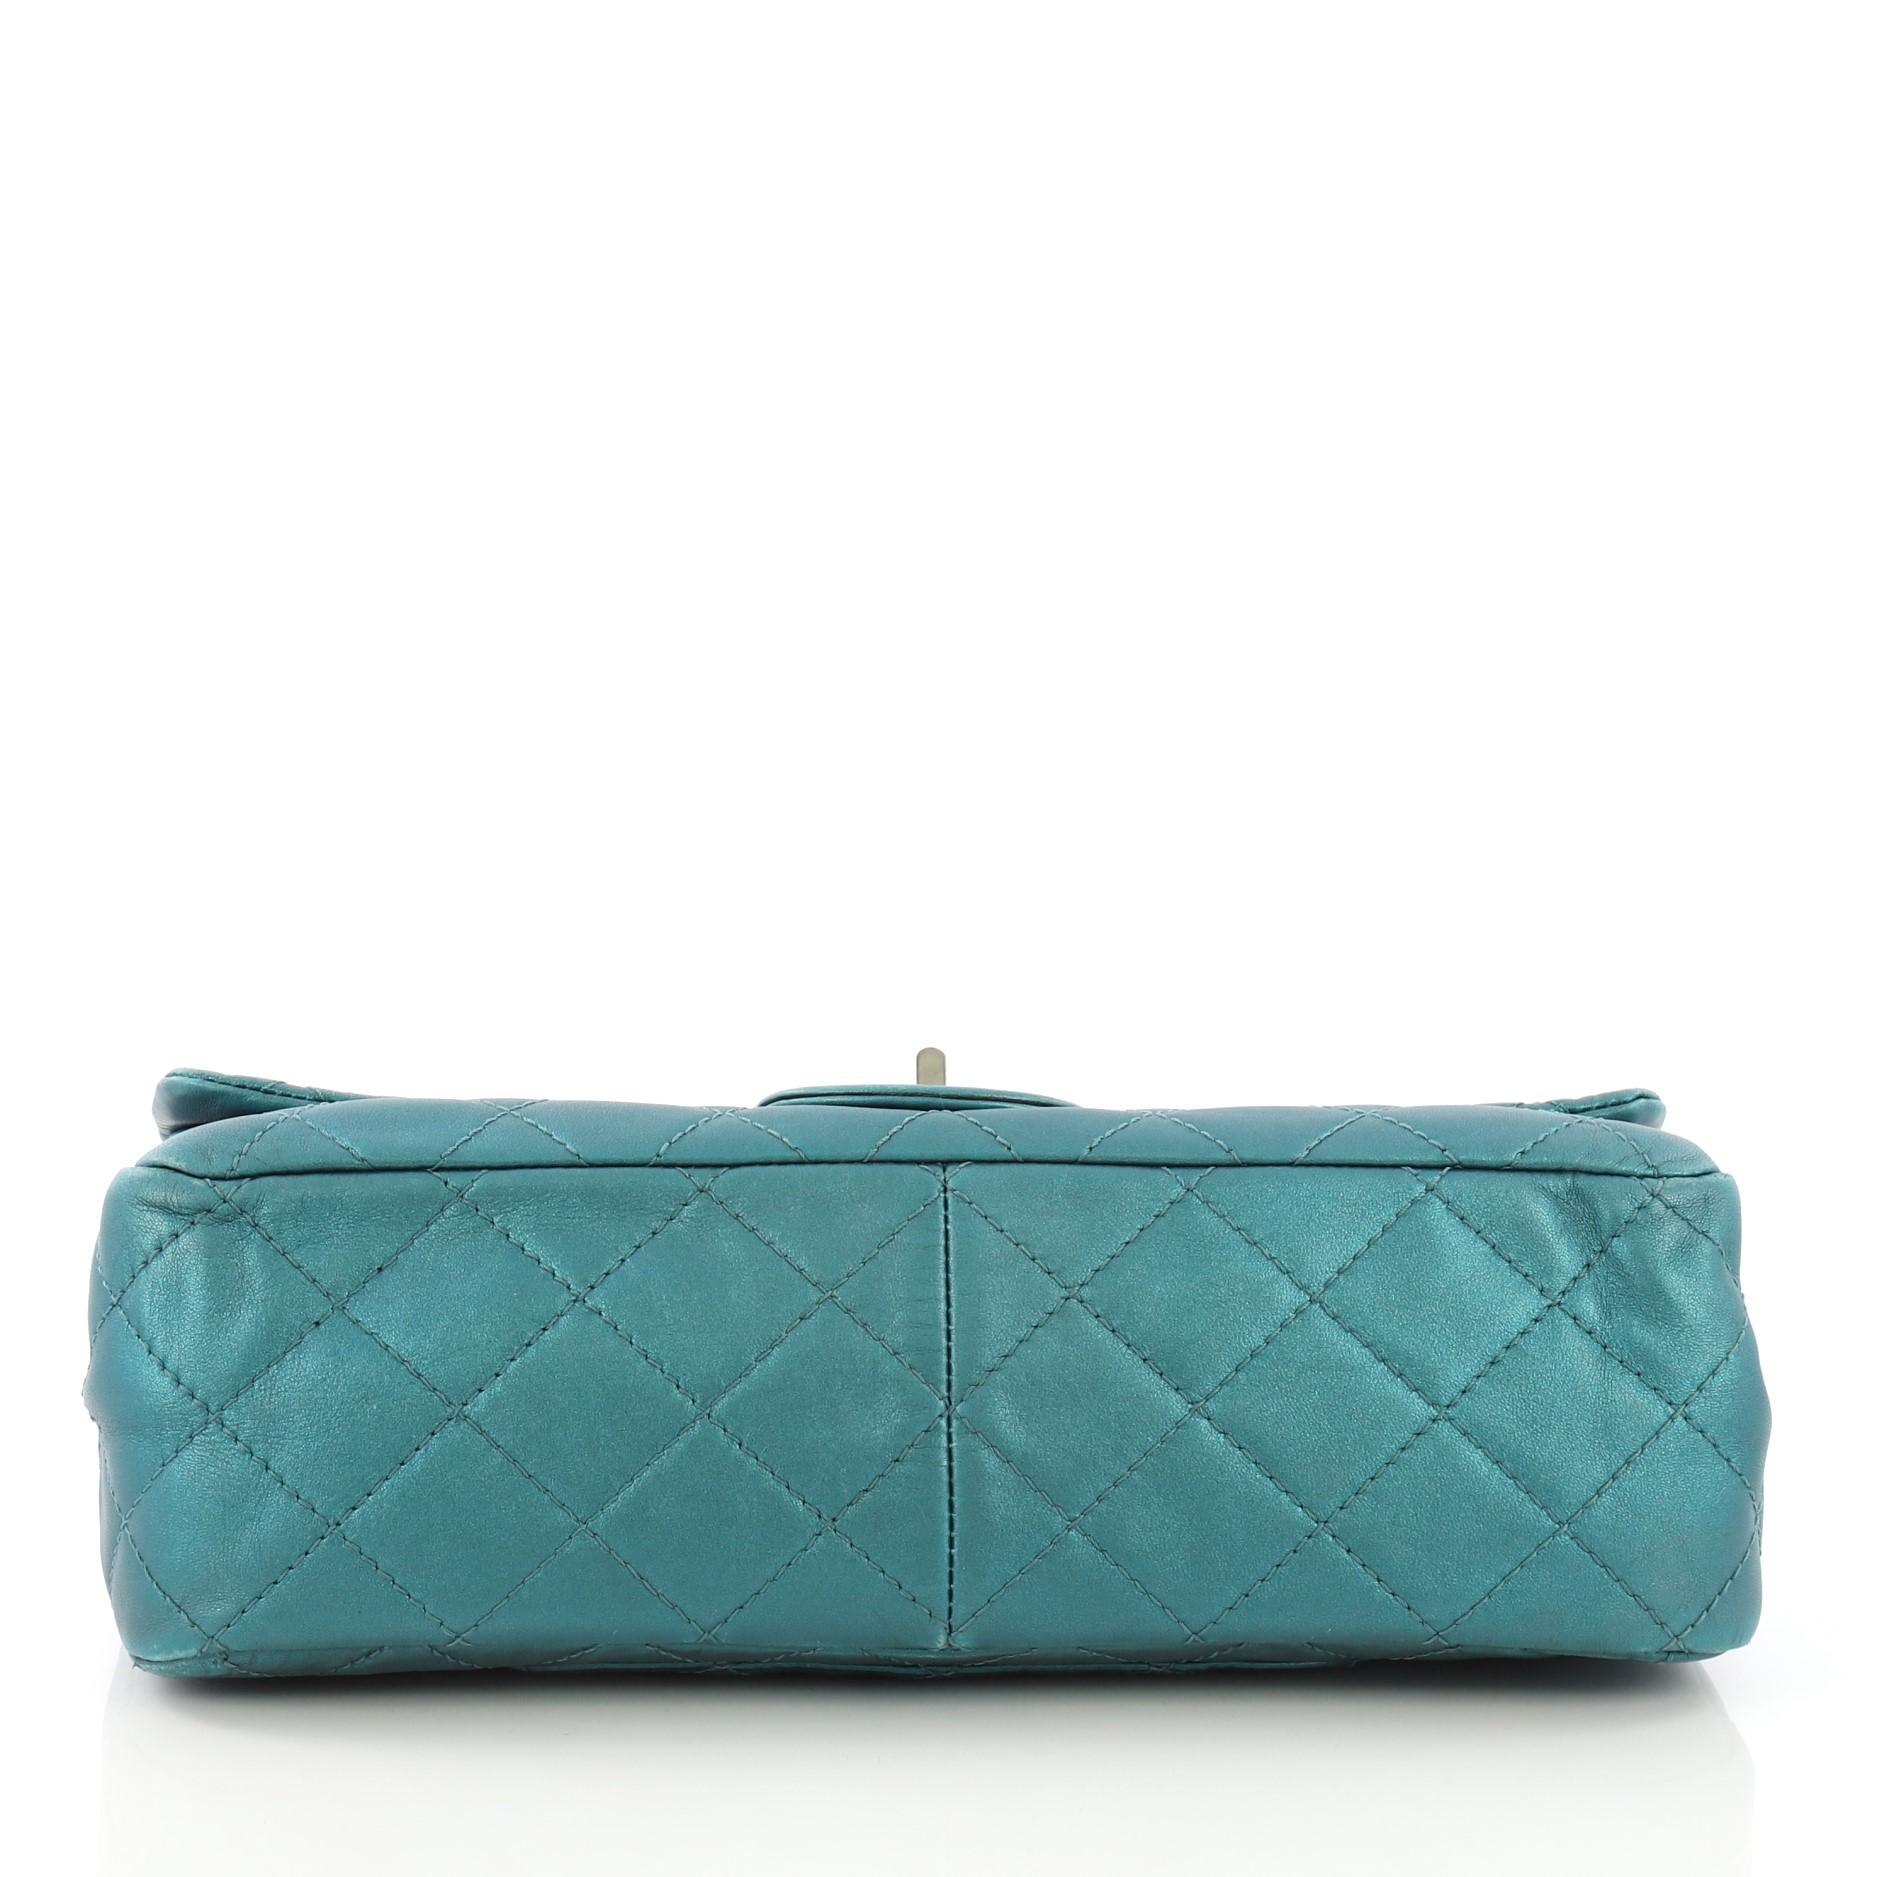 Chanel Reissue 2.55 Handbag Quilted Metallic Aged Calfskin 227 Damen